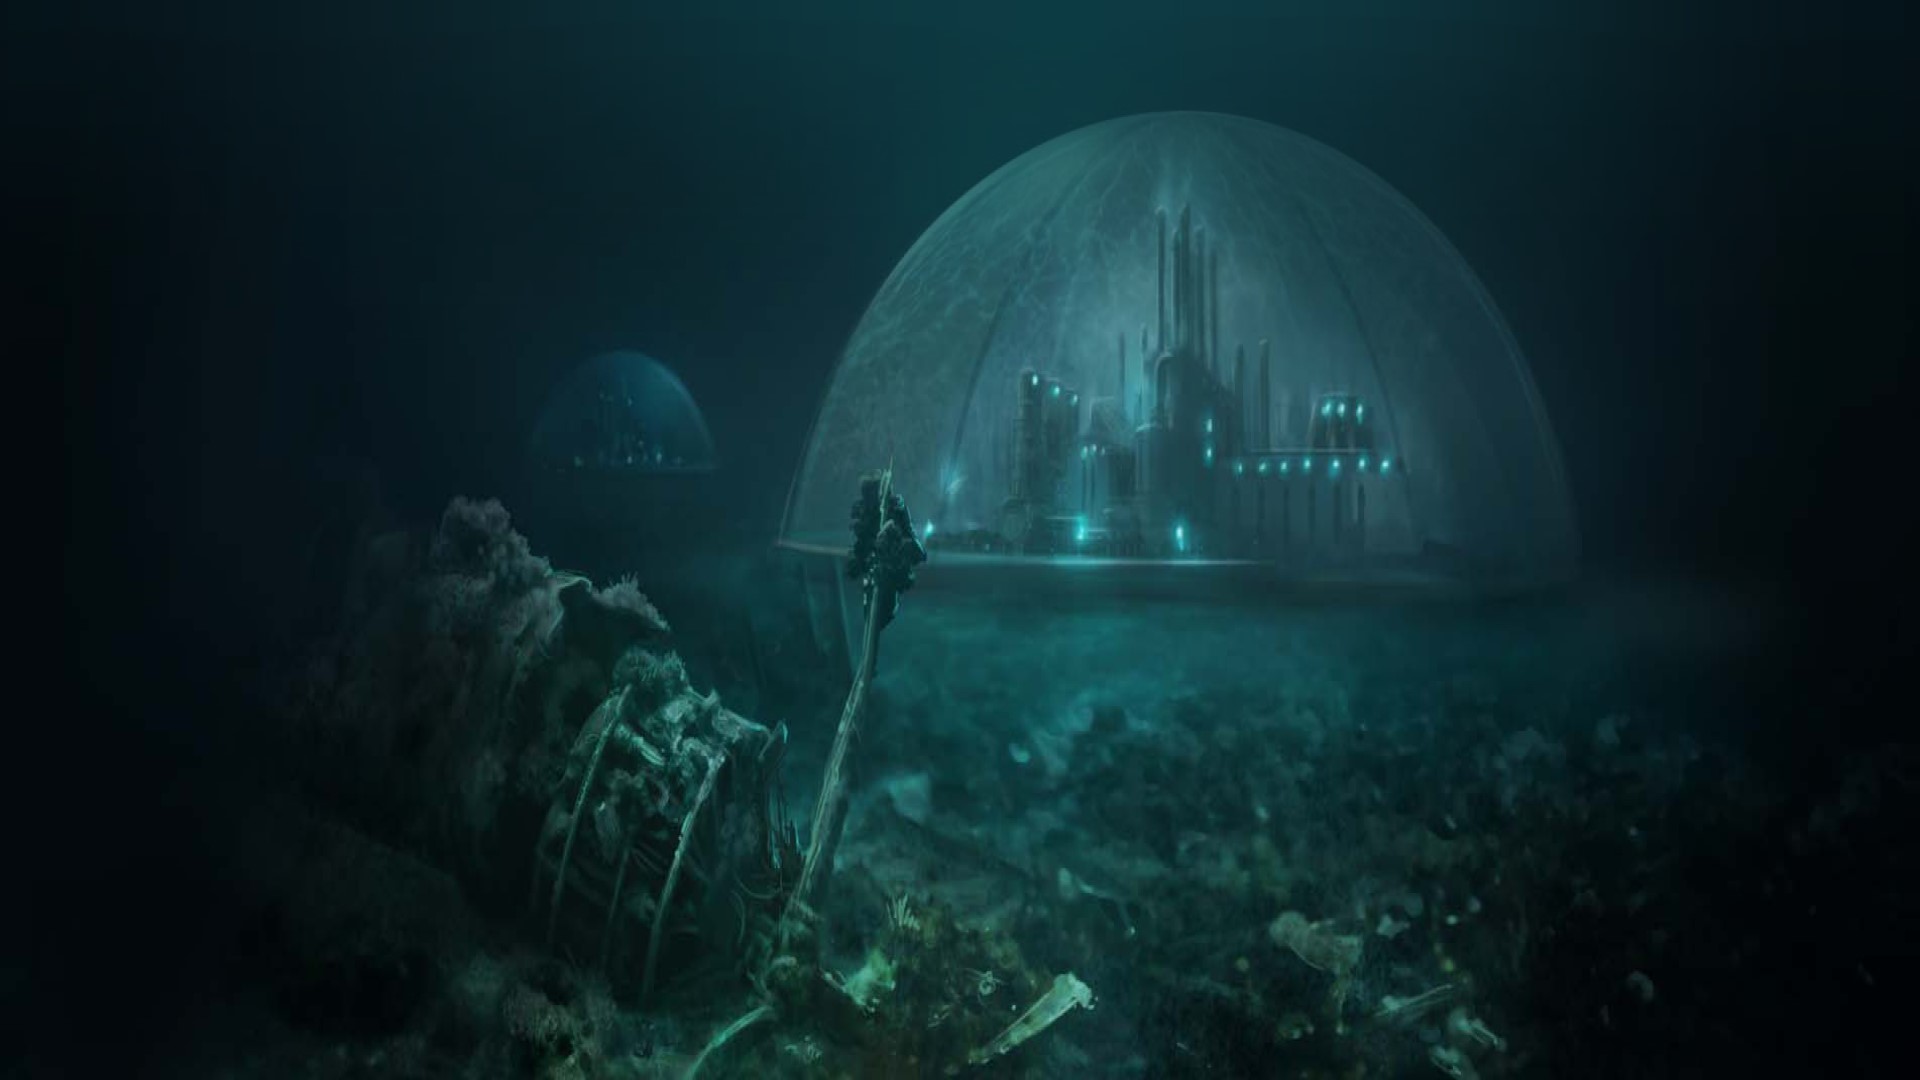 Trò chơi chiến lược di động tốt nhất: Suberfuge. Hình ảnh cho thấy một thành phố trong một mái vòm dưới biển